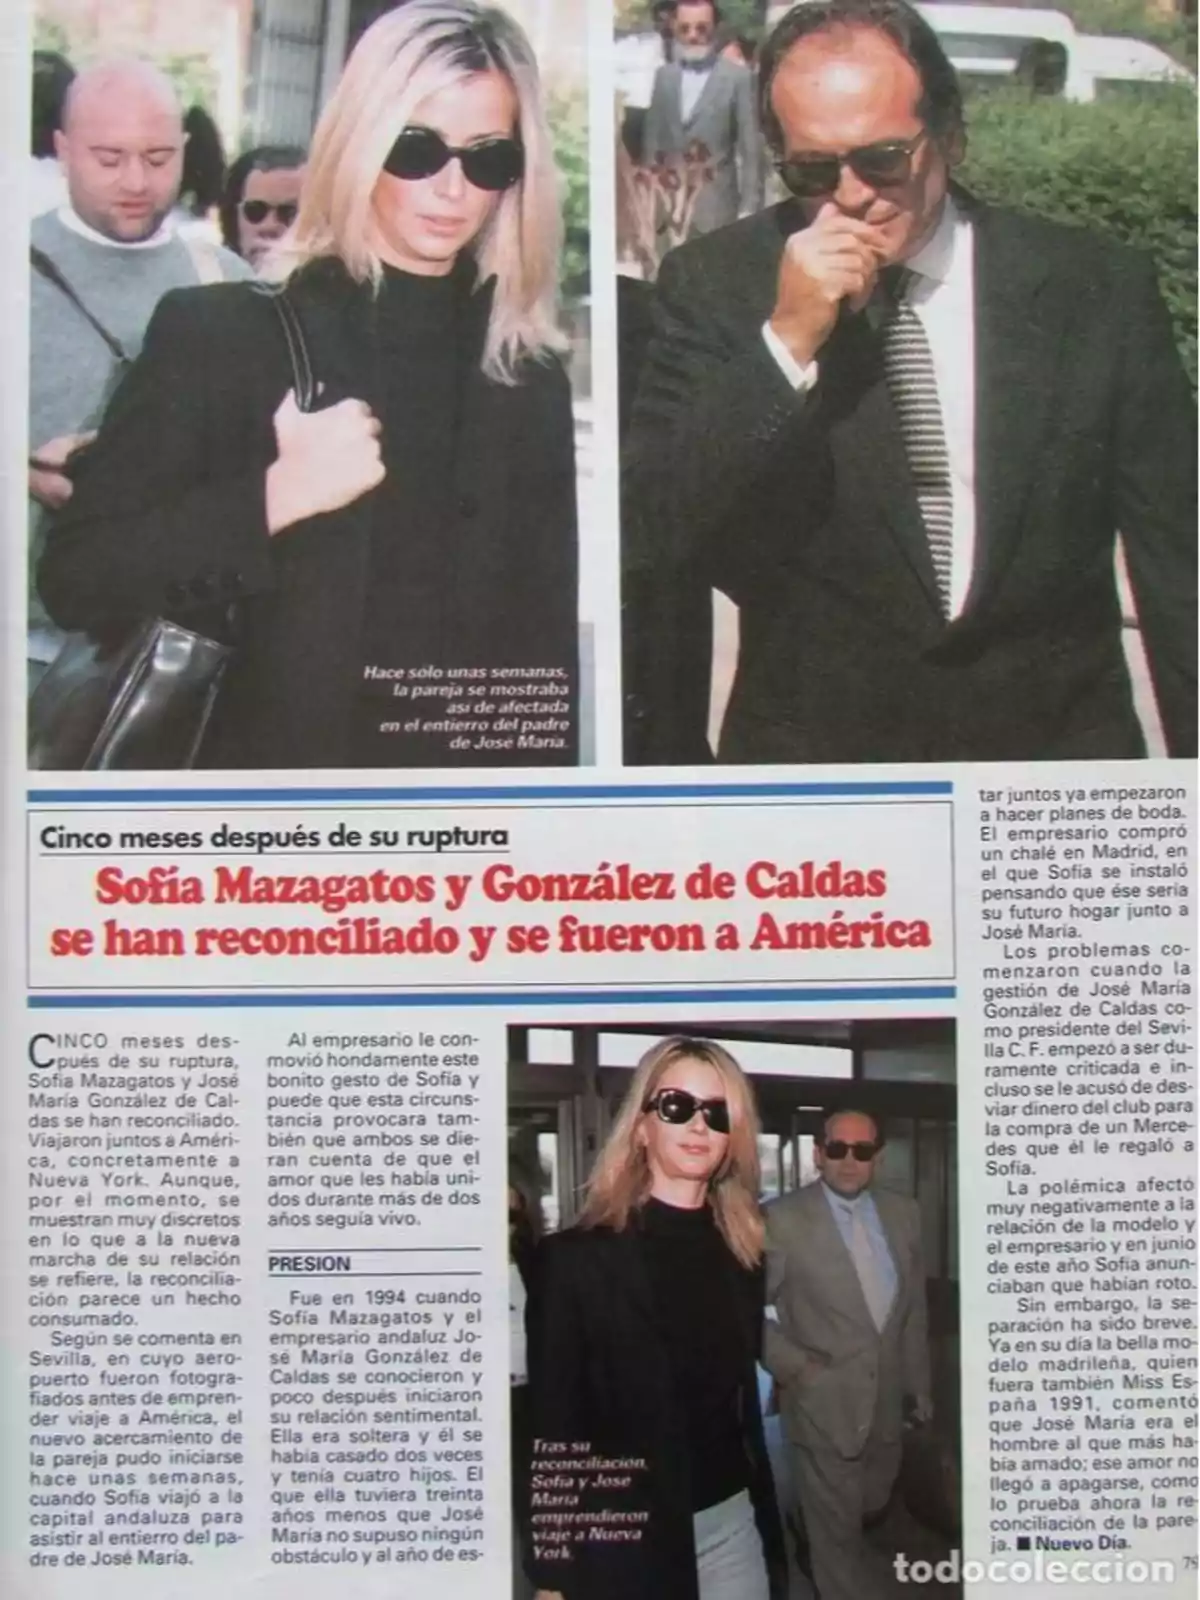 Cinco meses después de su ruptura, Sofía Mazagatos y González de Caldas se han reconciliado y se fueron a América.